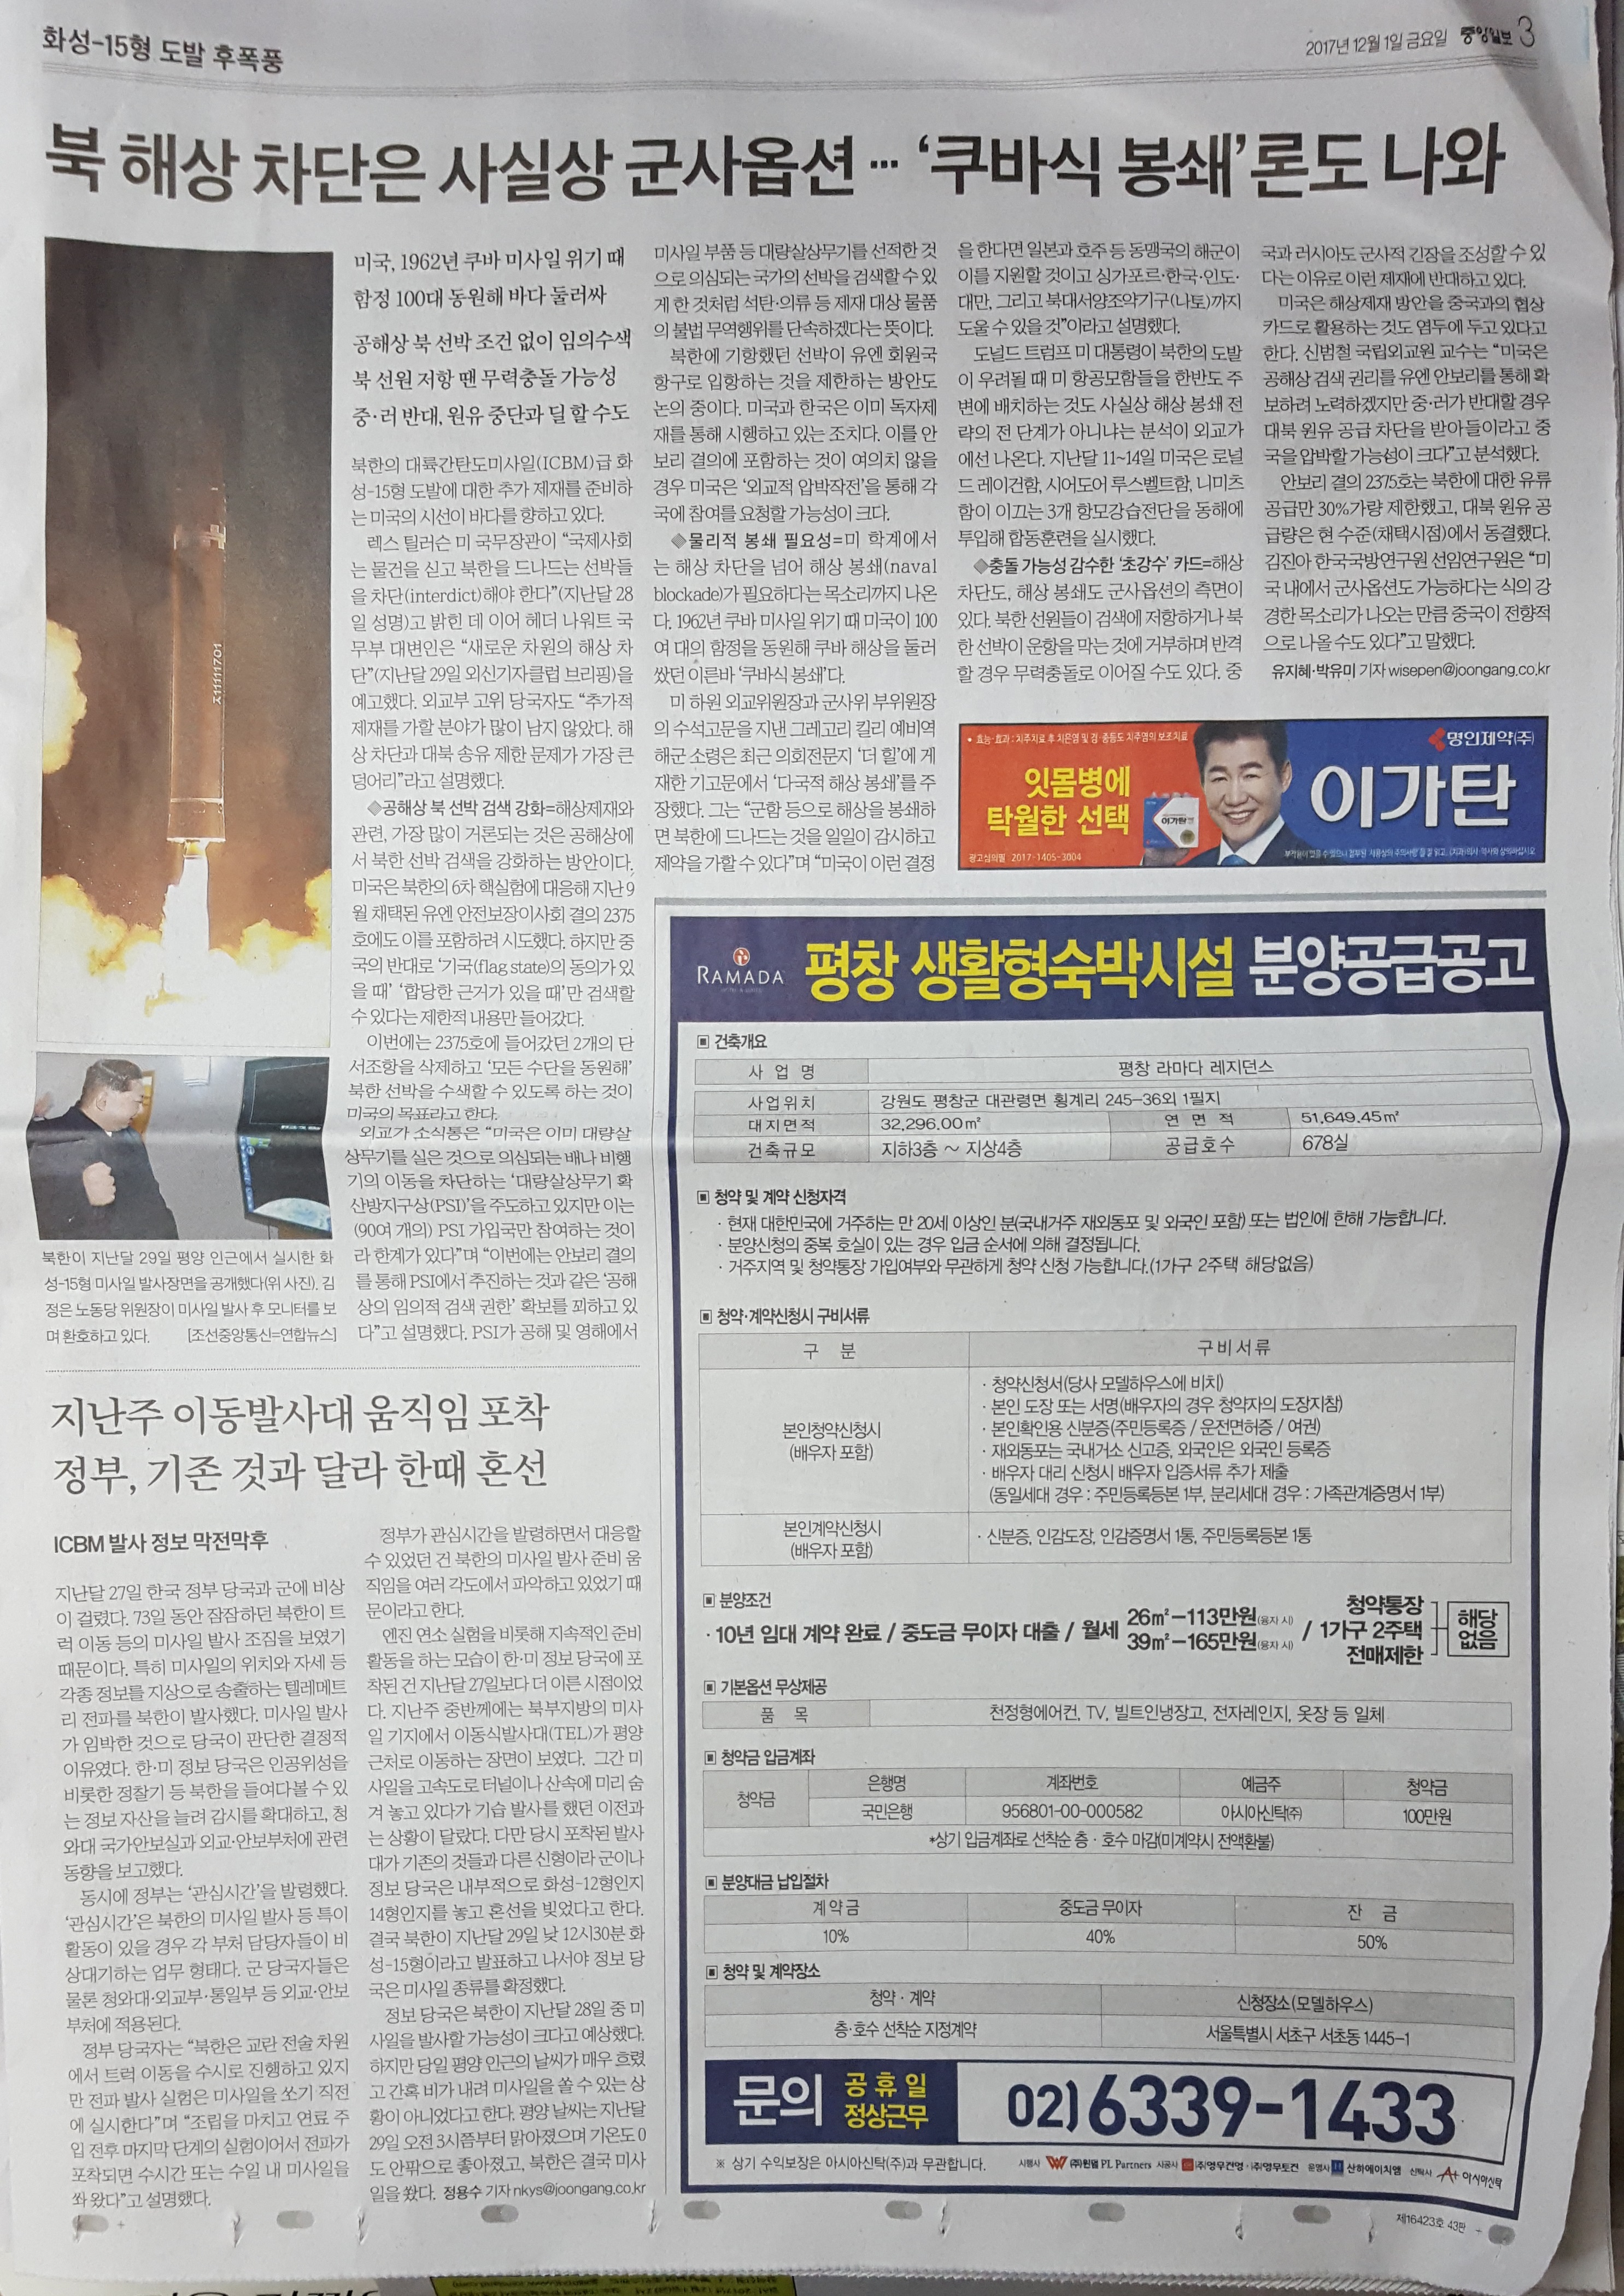 12월 1일 중앙일보 3 평창 라마다호텔 -9단21.jpg